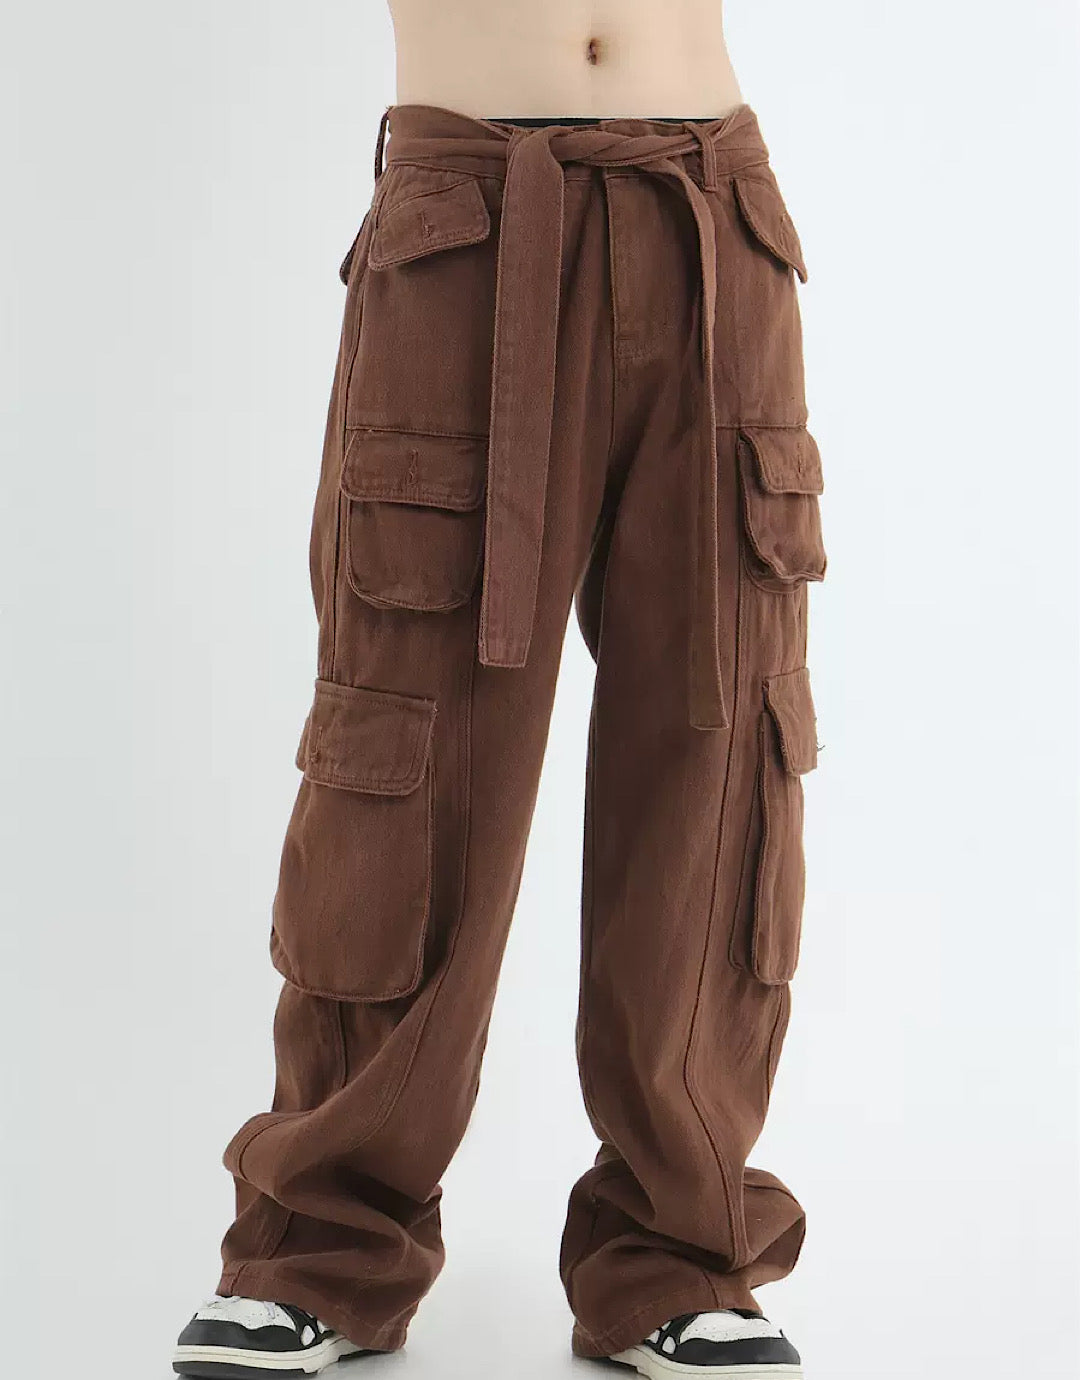 Bandeaus Vintage Cargo Pants HL2807